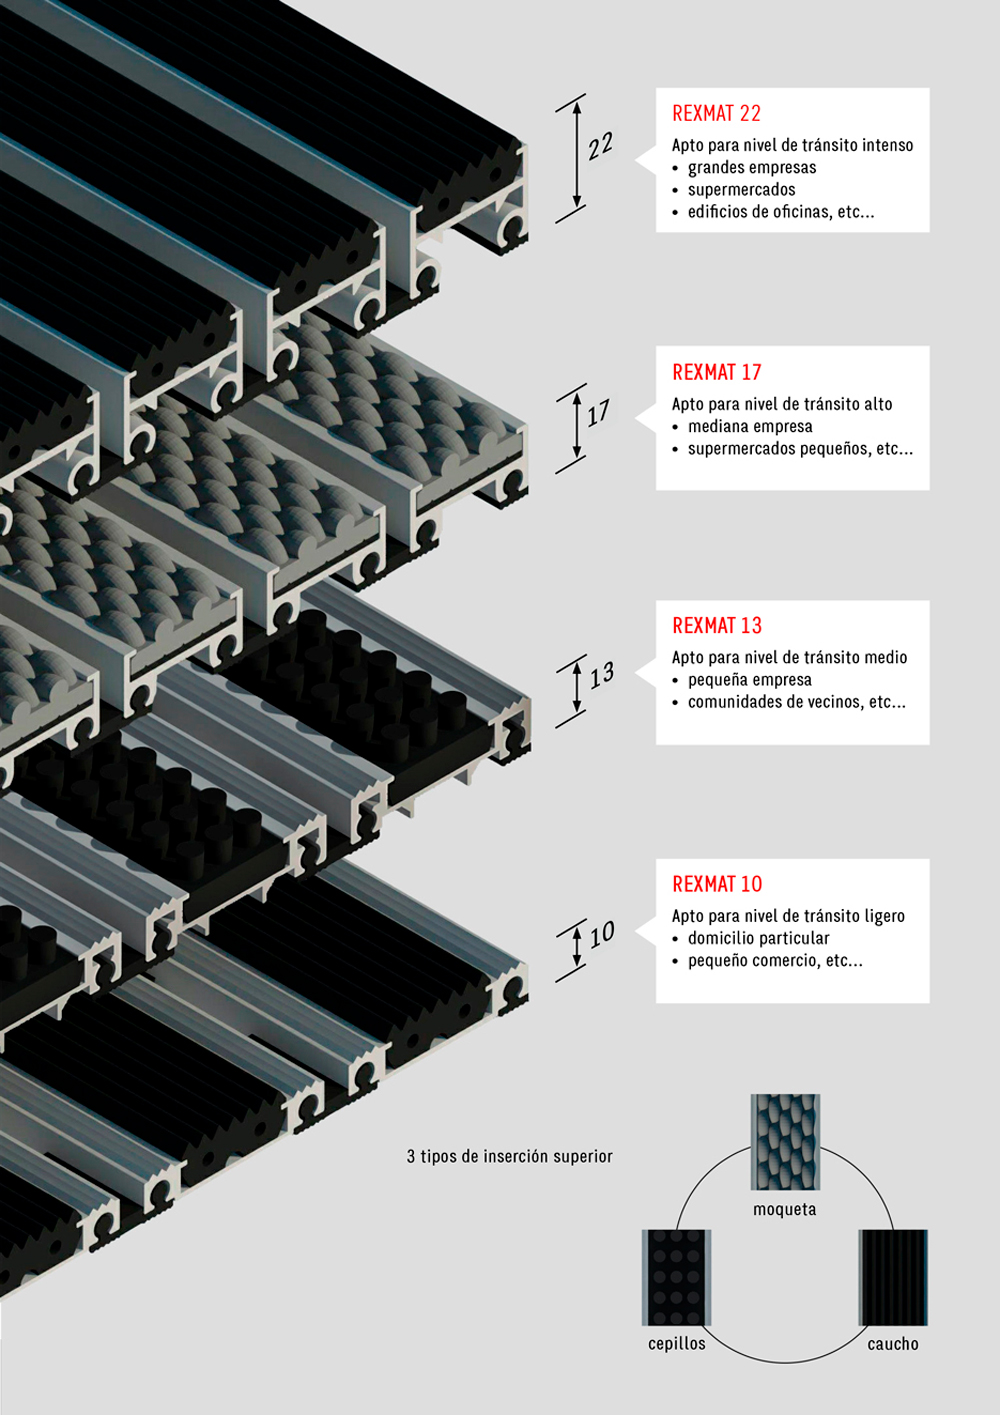 Felpudos de aluminio Rexmat diferencias entre el de 22, 17, 13 y 10. 3 Tipos de inserción